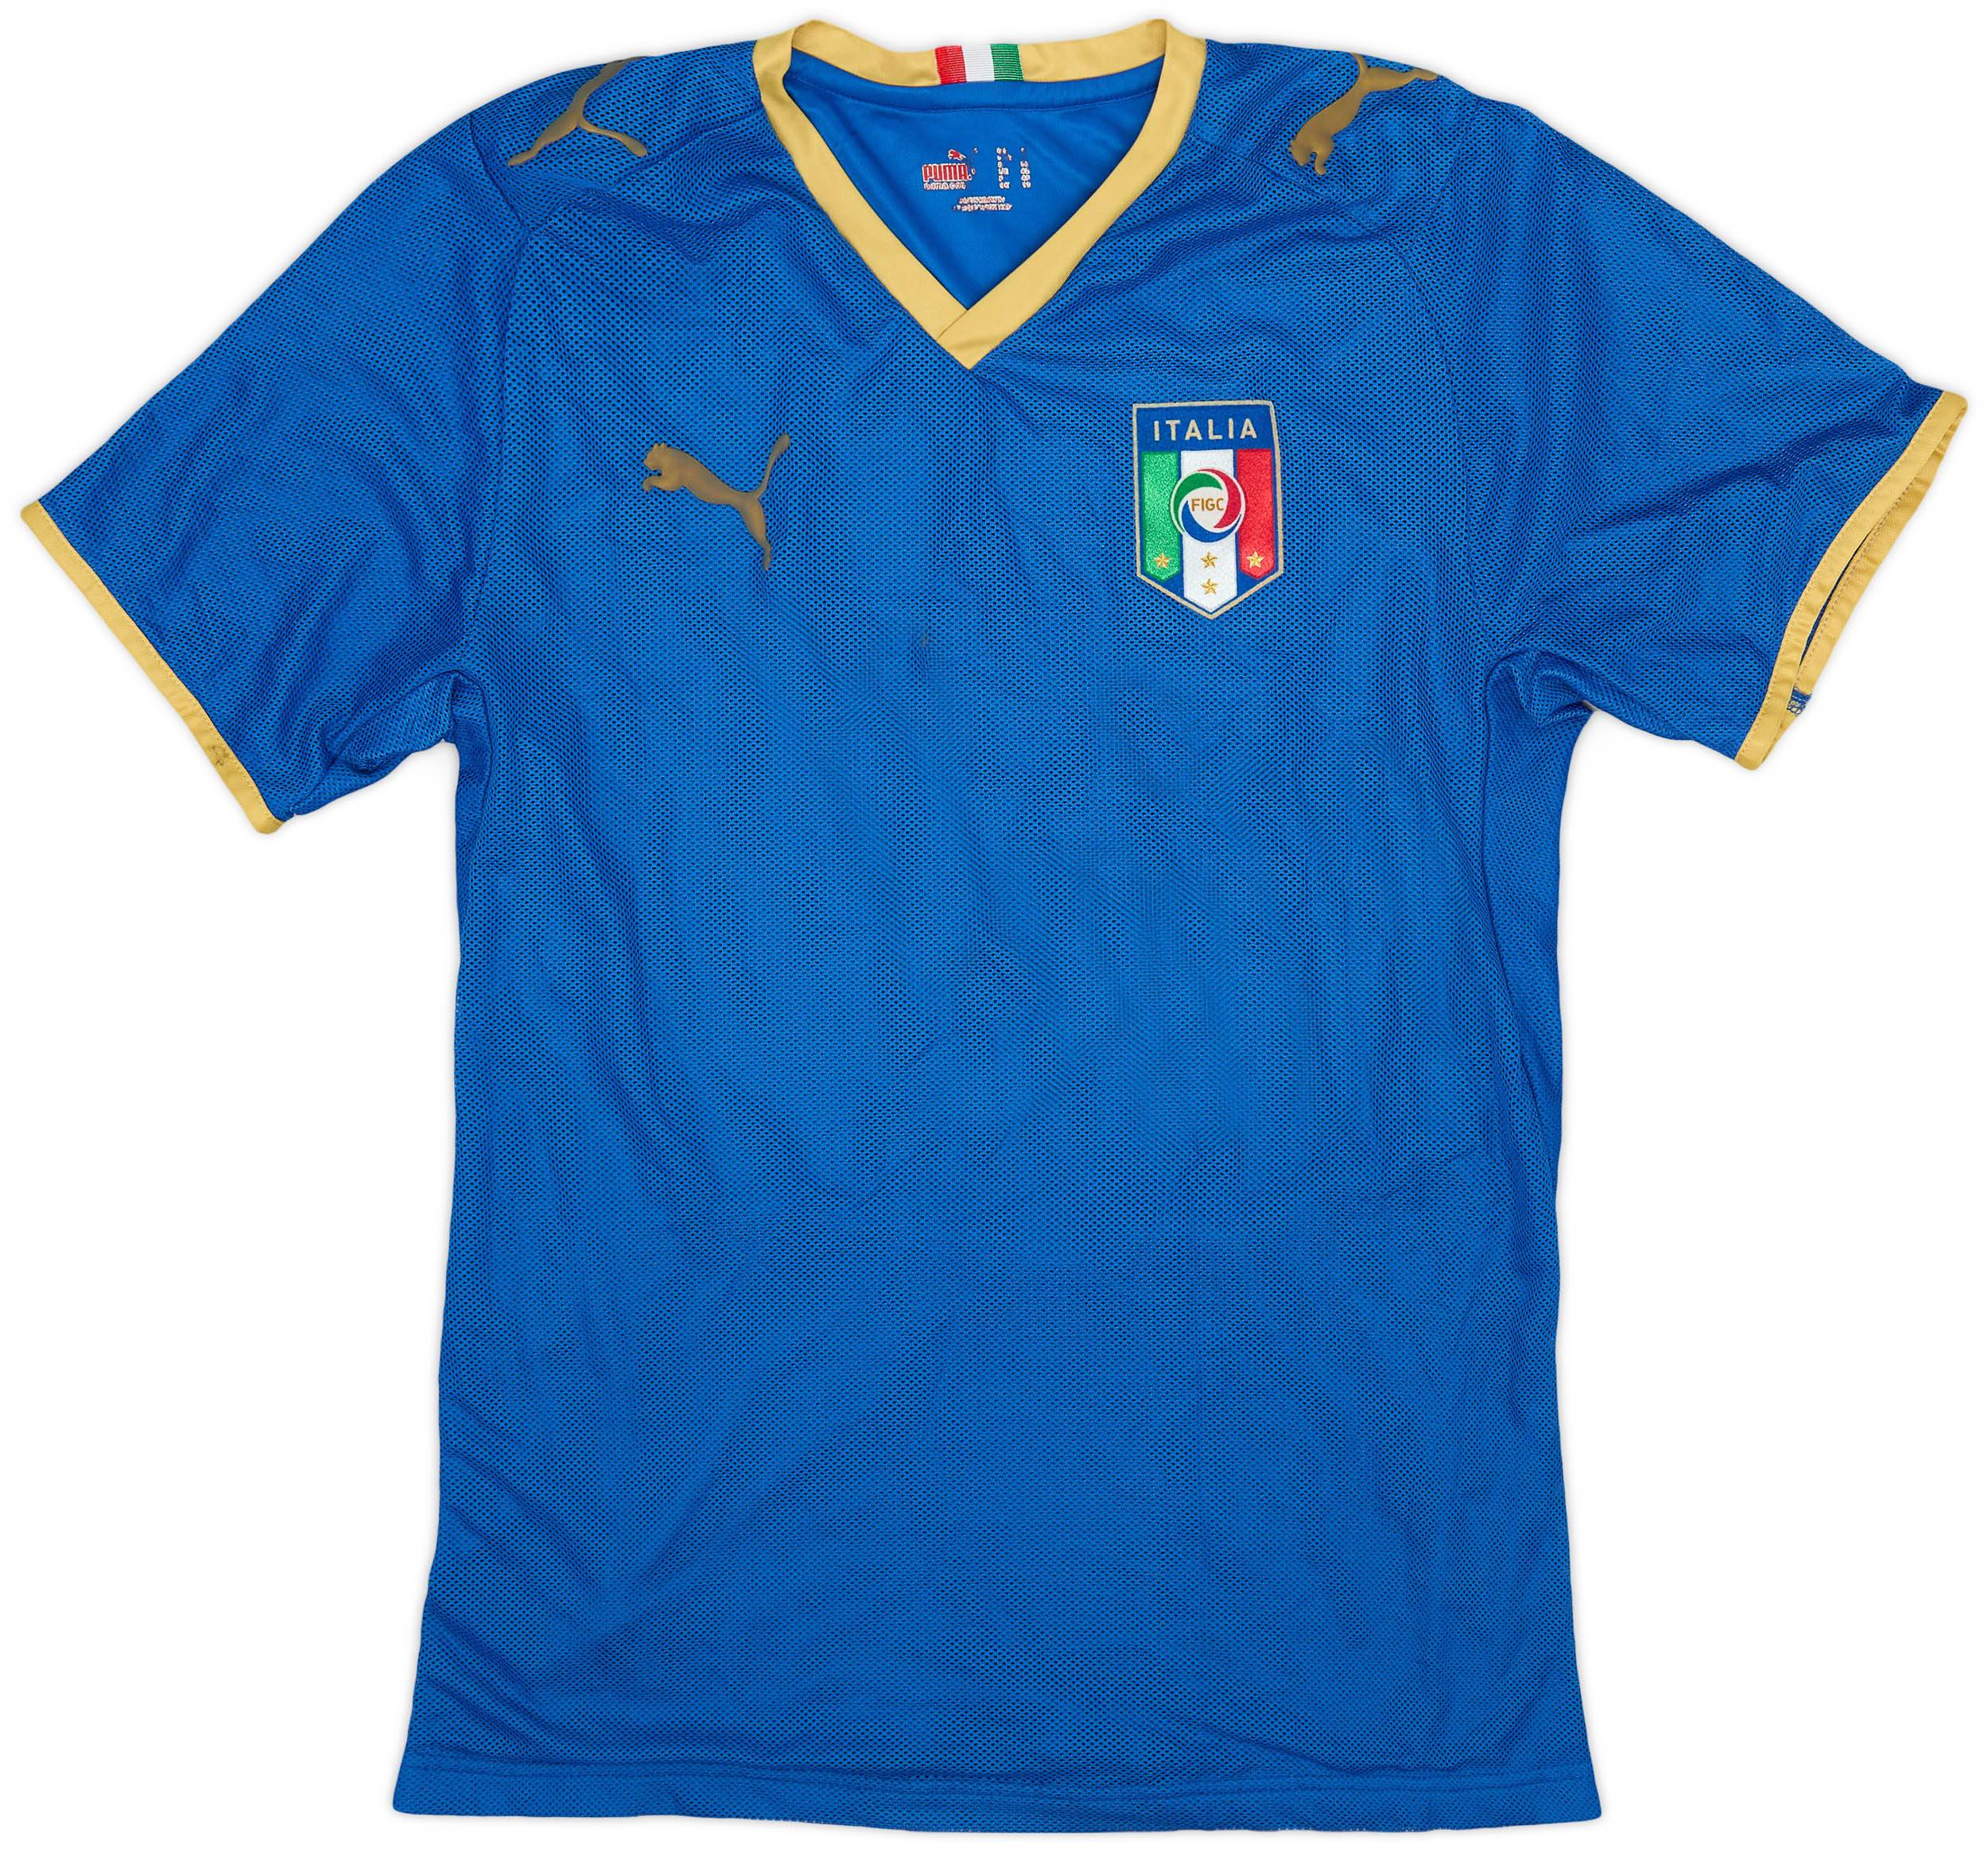 2007-08 Italy Home Shirt - 9/10 - (Women's M)